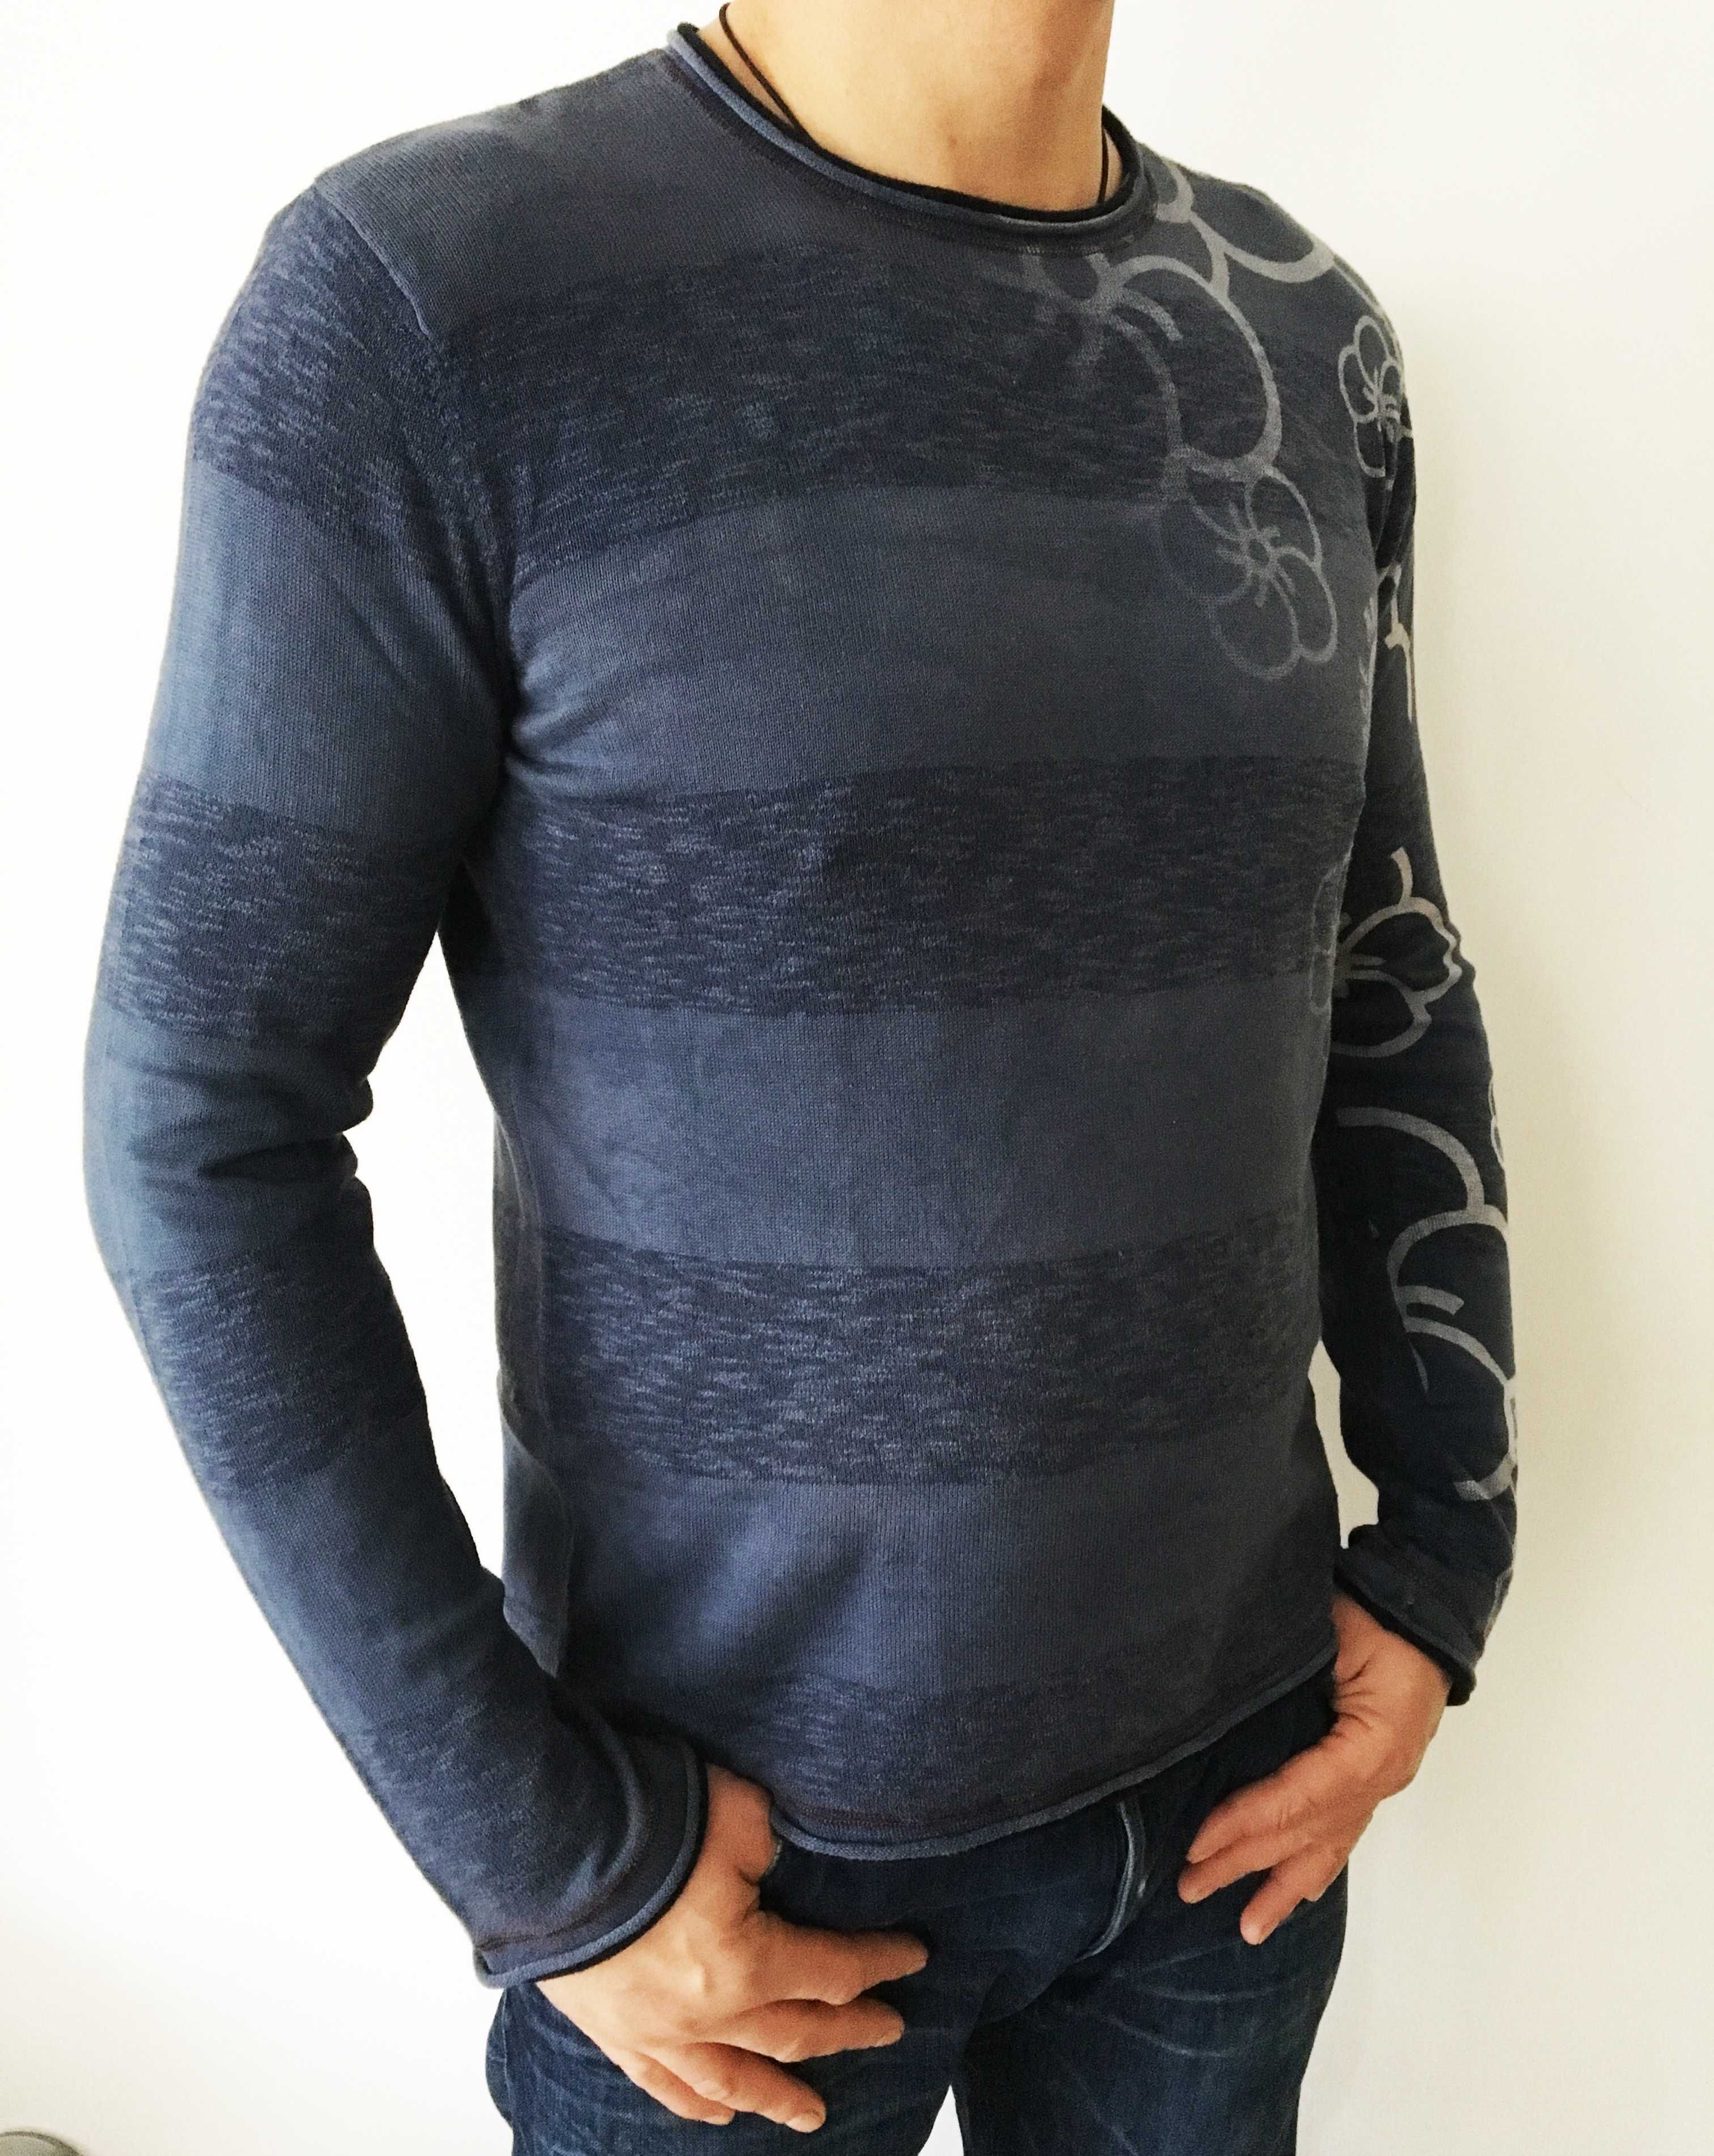 Мъжка блуза Armani Jeans, размер XL, оригиналнa, в перфектно състояние